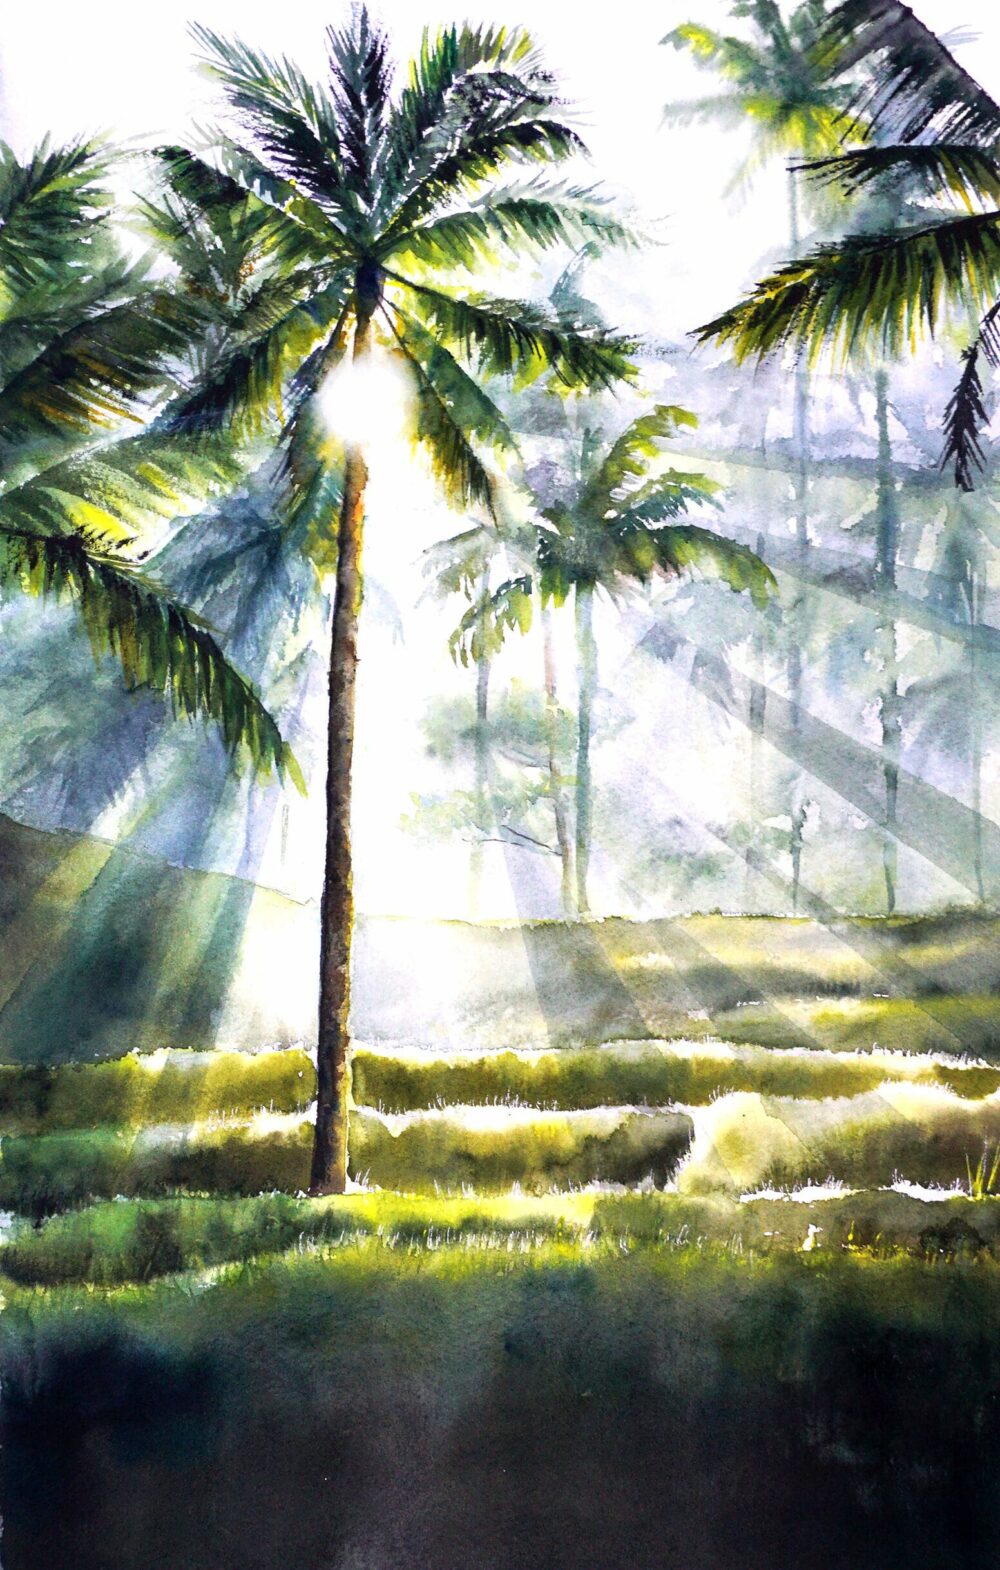 Original watercolor painting of jungle in Bali